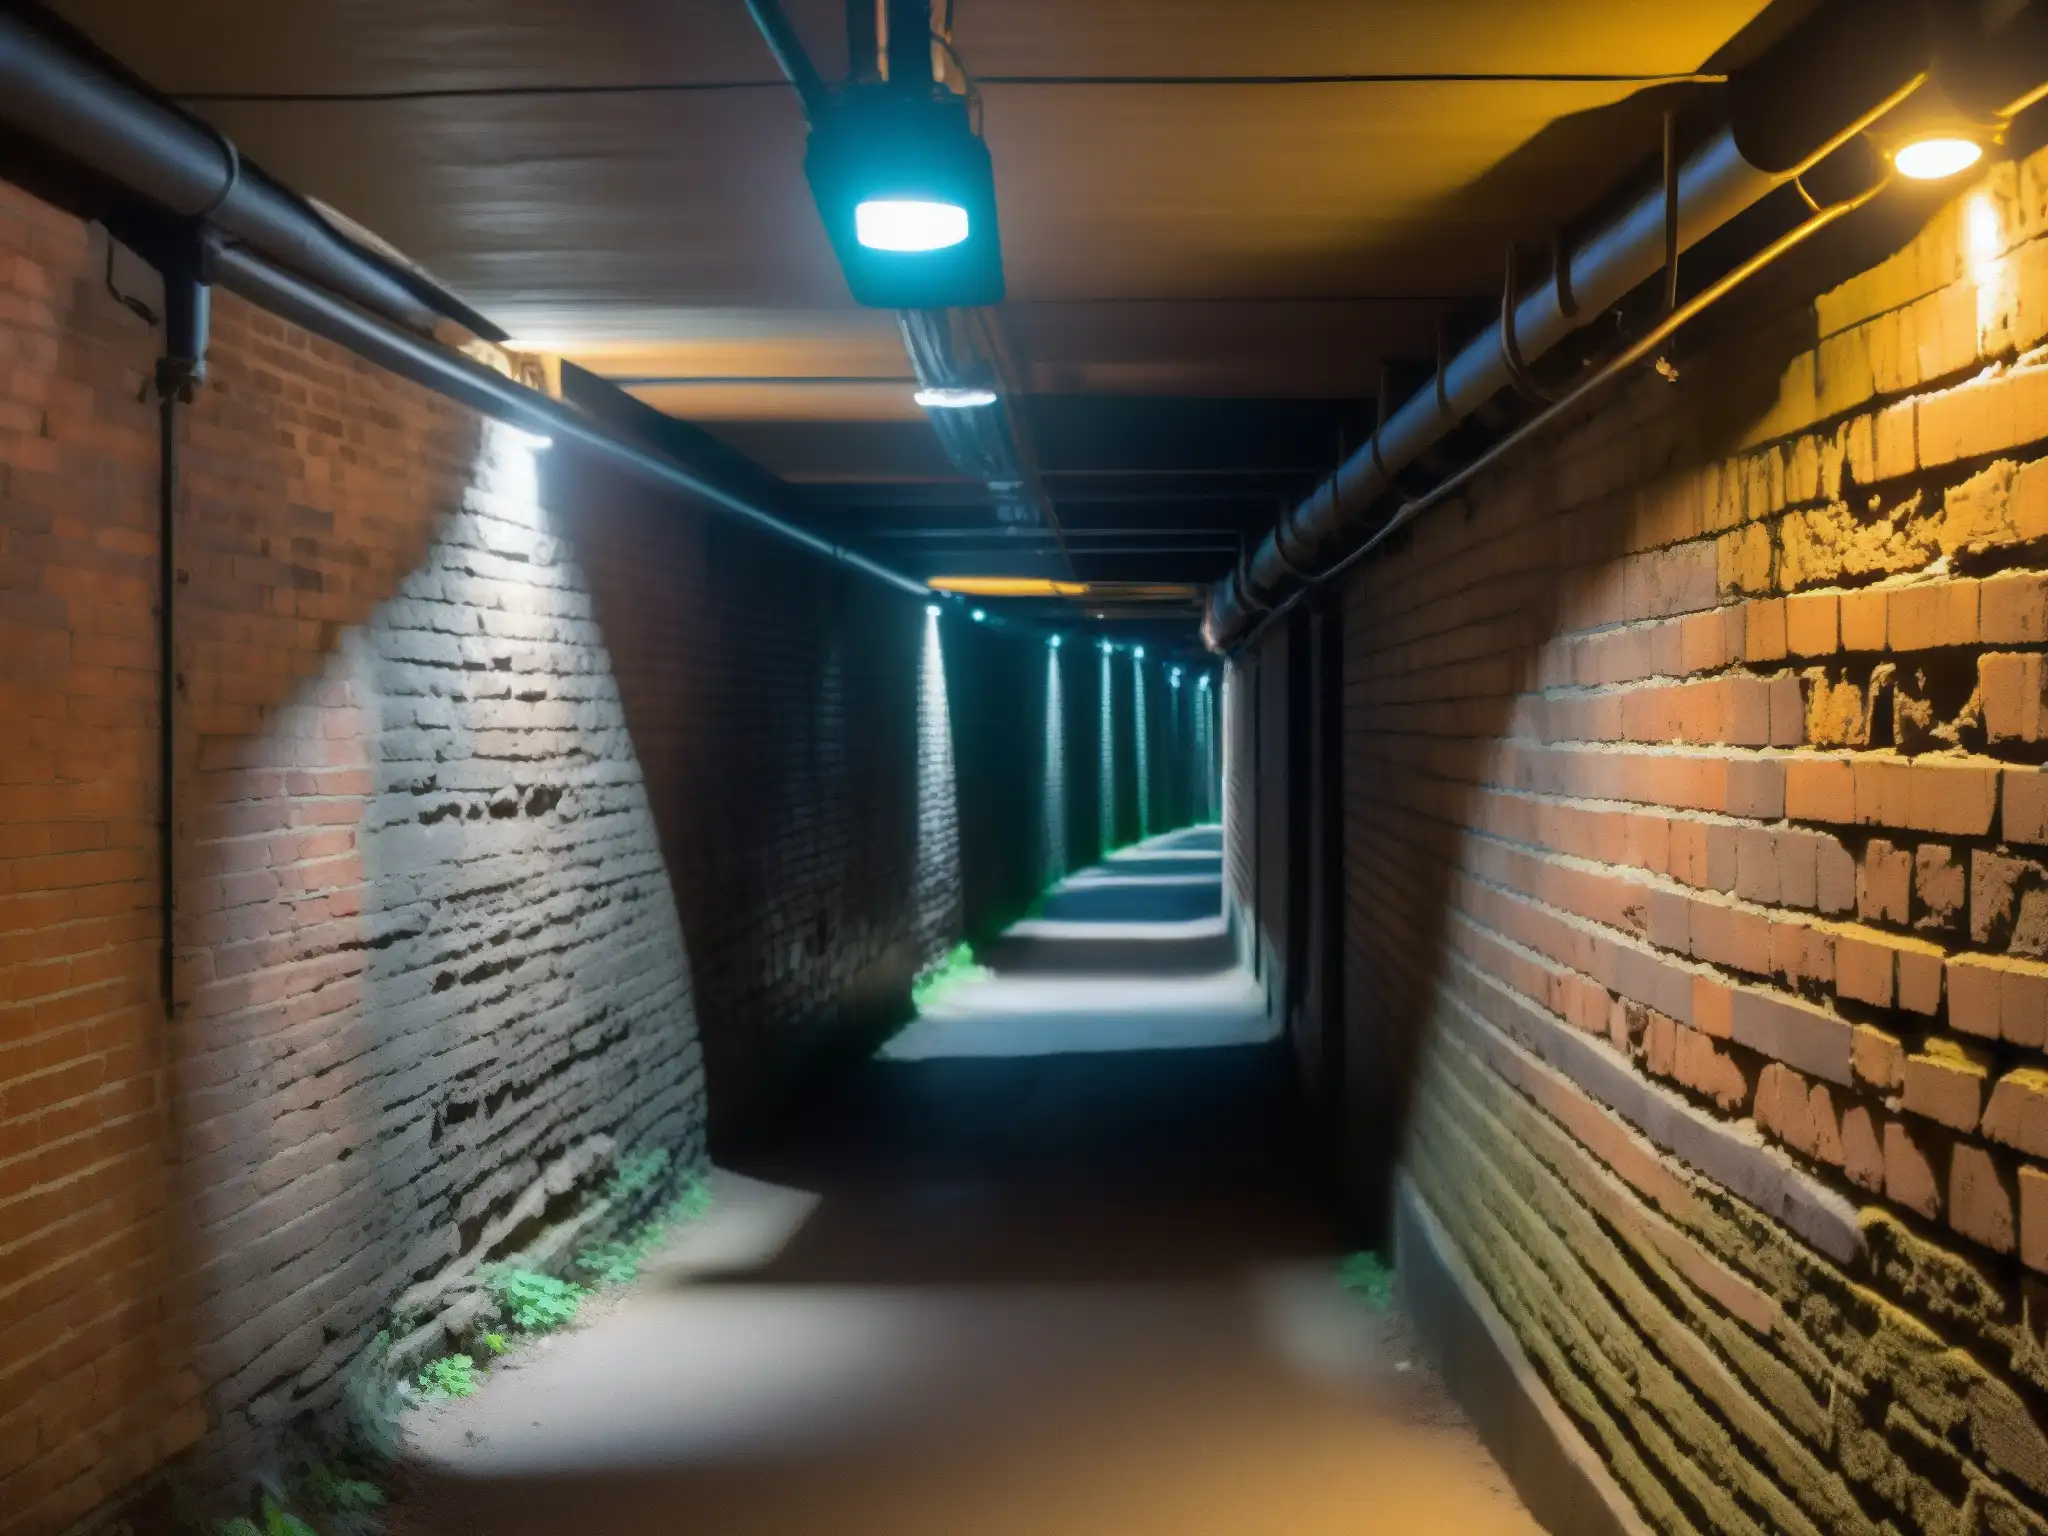 Exploración en los Túneles perdidos Universidad Dalhousie: pasadizos estrechos, muros de ladrillo, luces titilantes, misterio y aventura